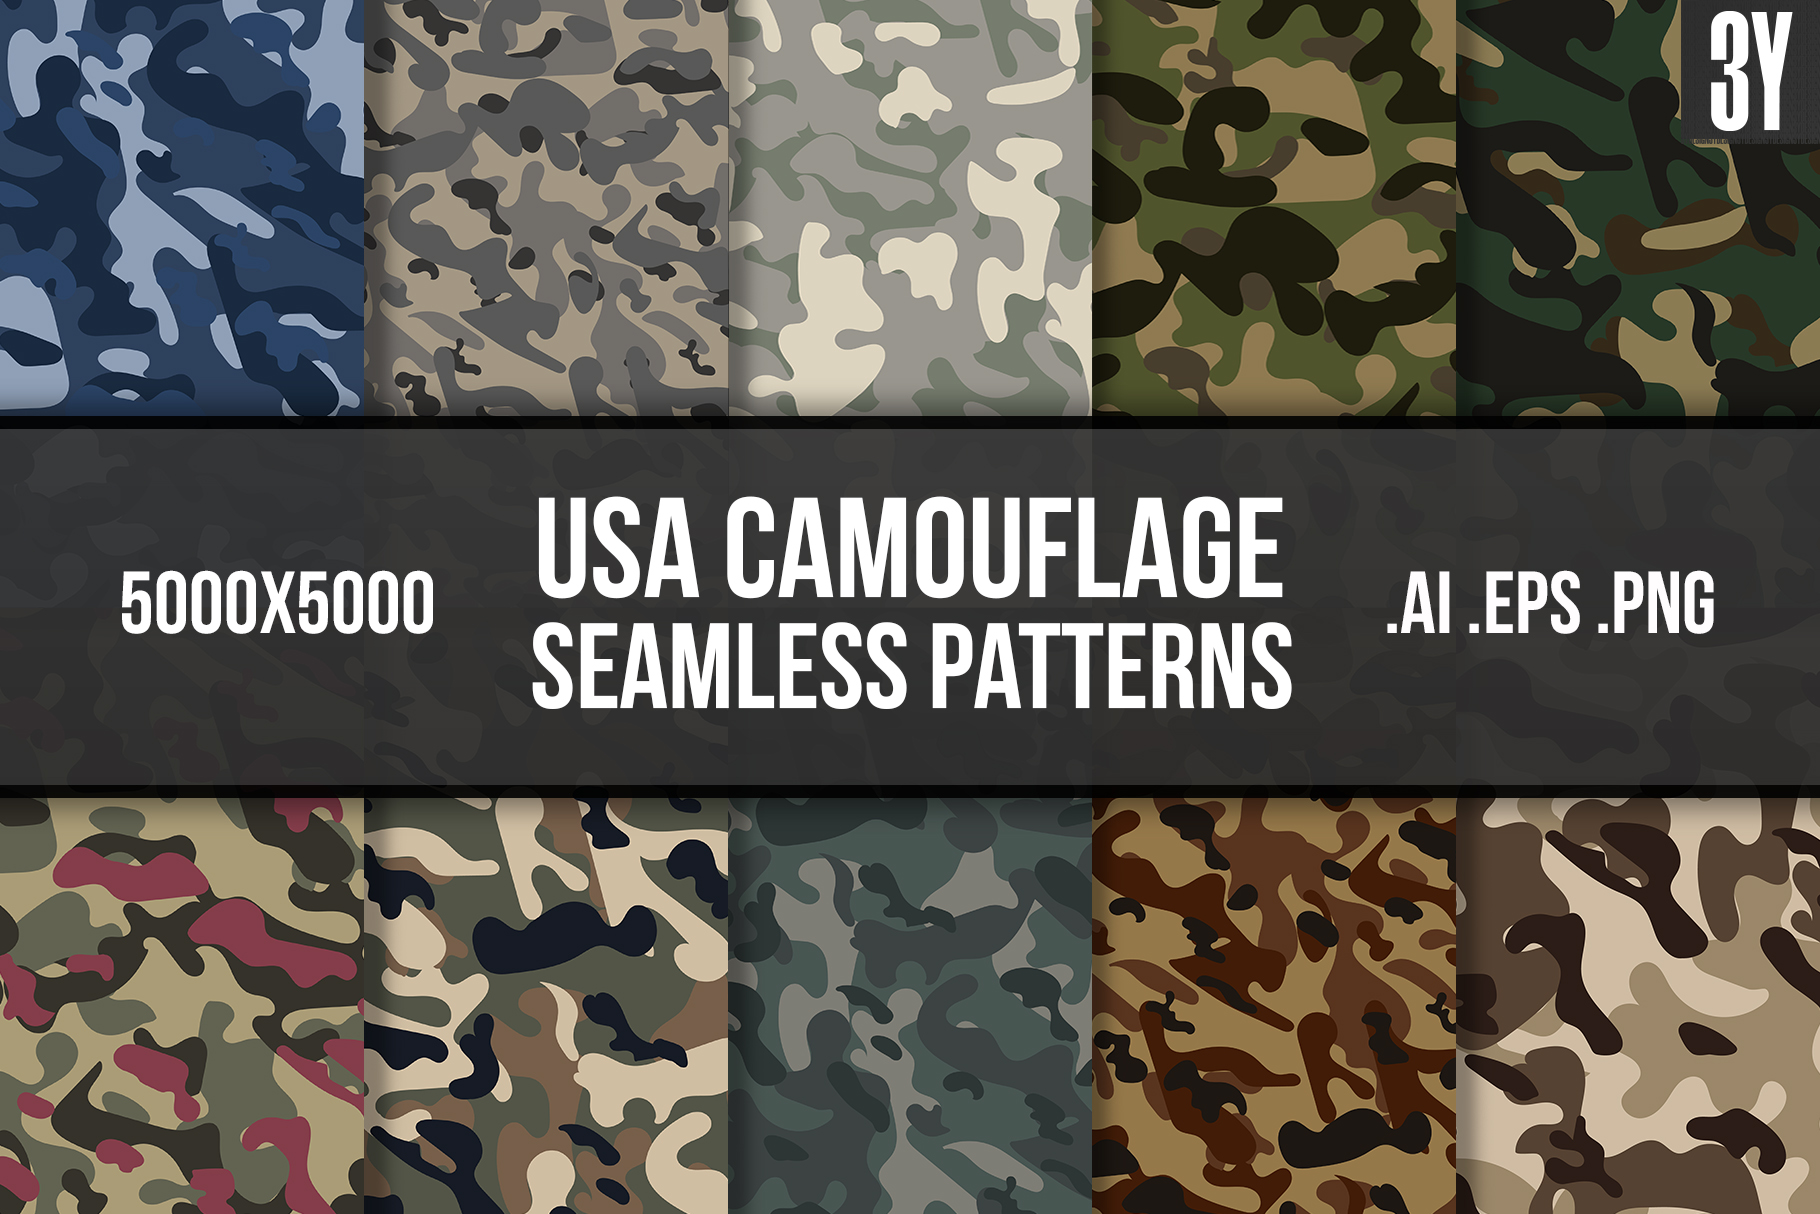 USA Camouflage Seamless Patterns